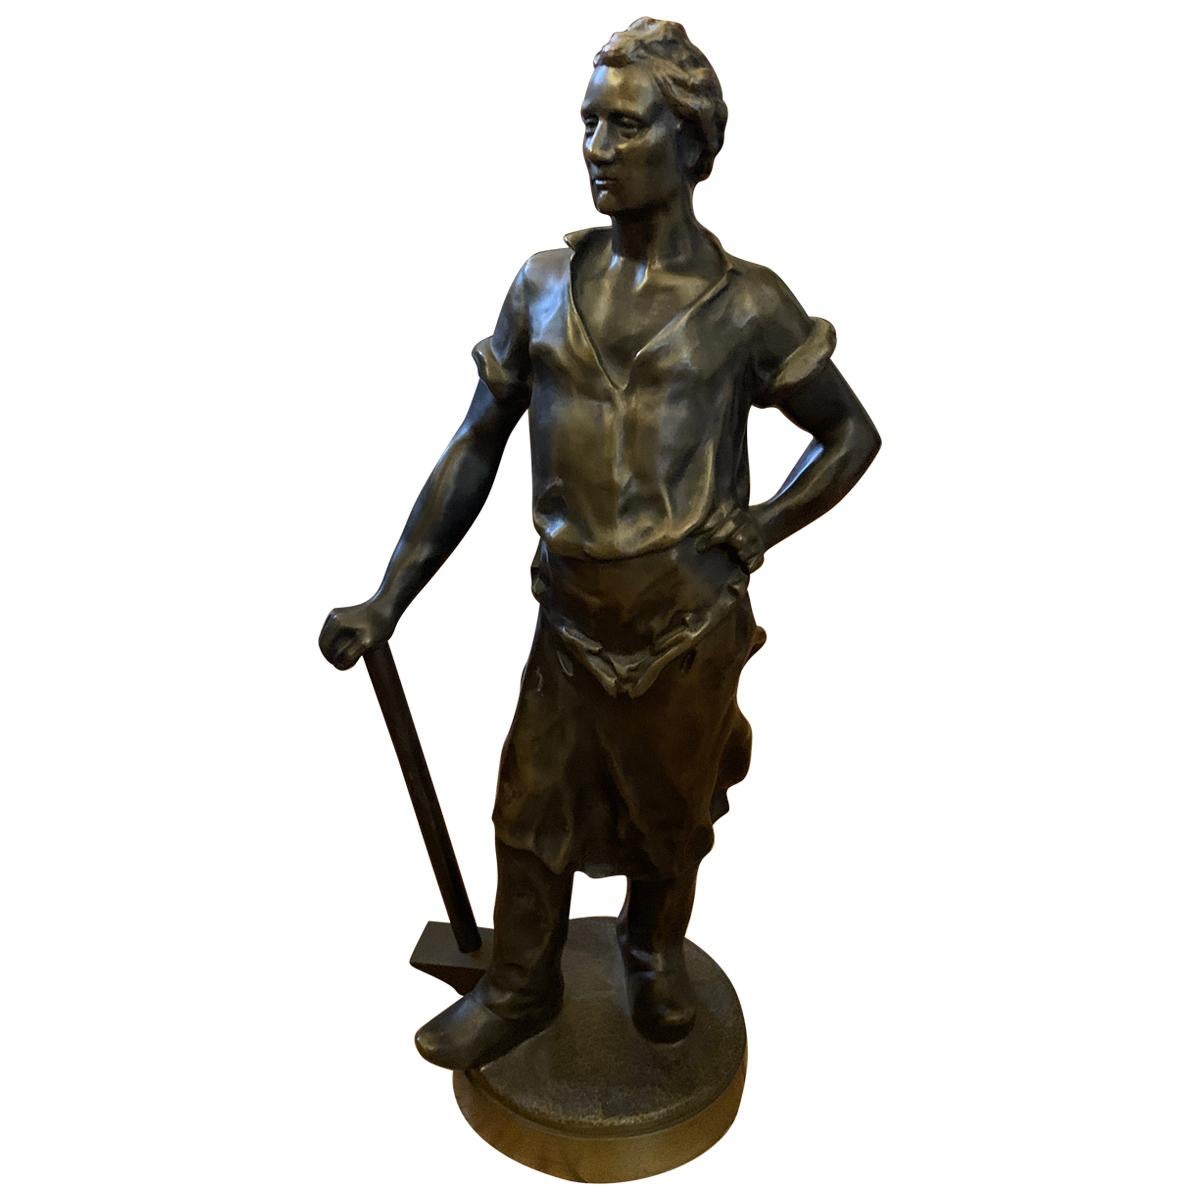 Bronze Sculpture of a Working Man holding a Sledgehammer